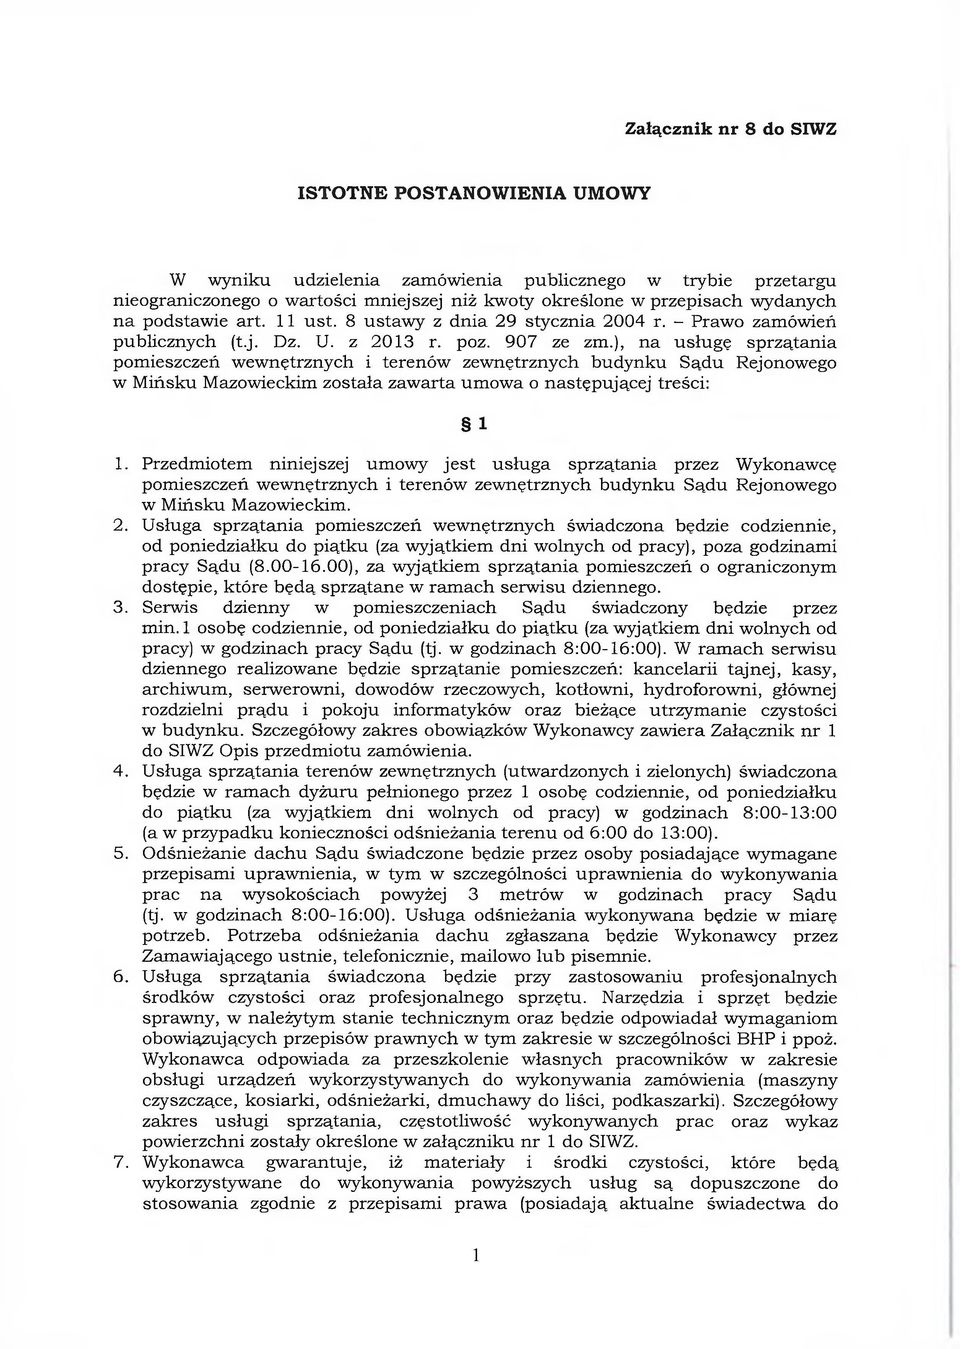 ), na usługę sprzątania pomieszczeń wewnętrznych i terenów zewnętrznych budynku Sądu Rejonowego w Mińsku Mazowieckim została zawarta umowa o następującej treści: 1 1.